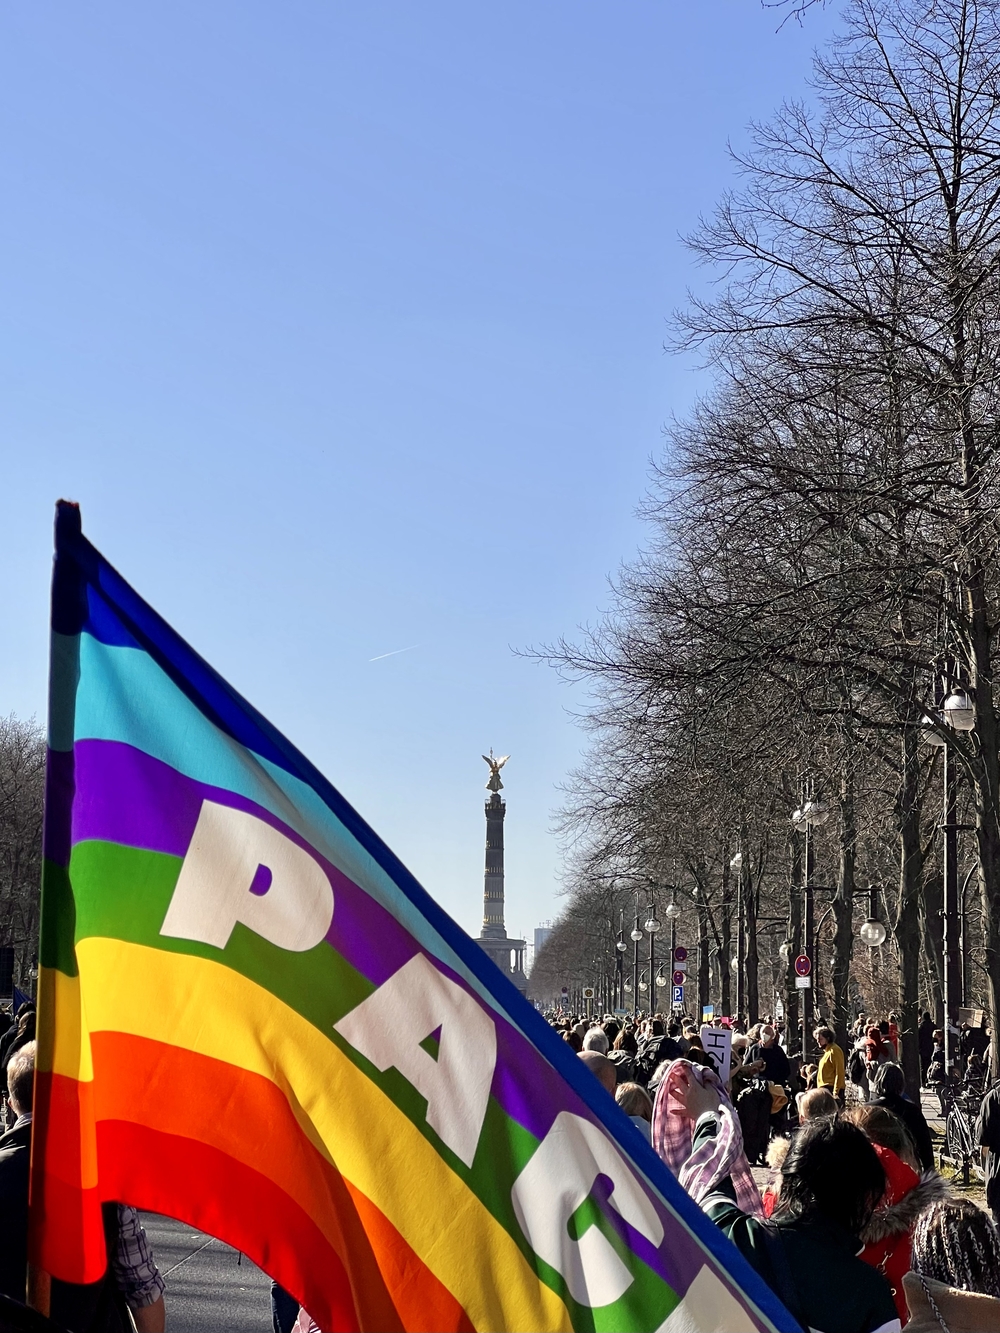 Regenbogenflagge mit der Aufschrift „PACE“ vor einer Menschenmenge, die auf die Siegessäule in Berlin zuläuft.